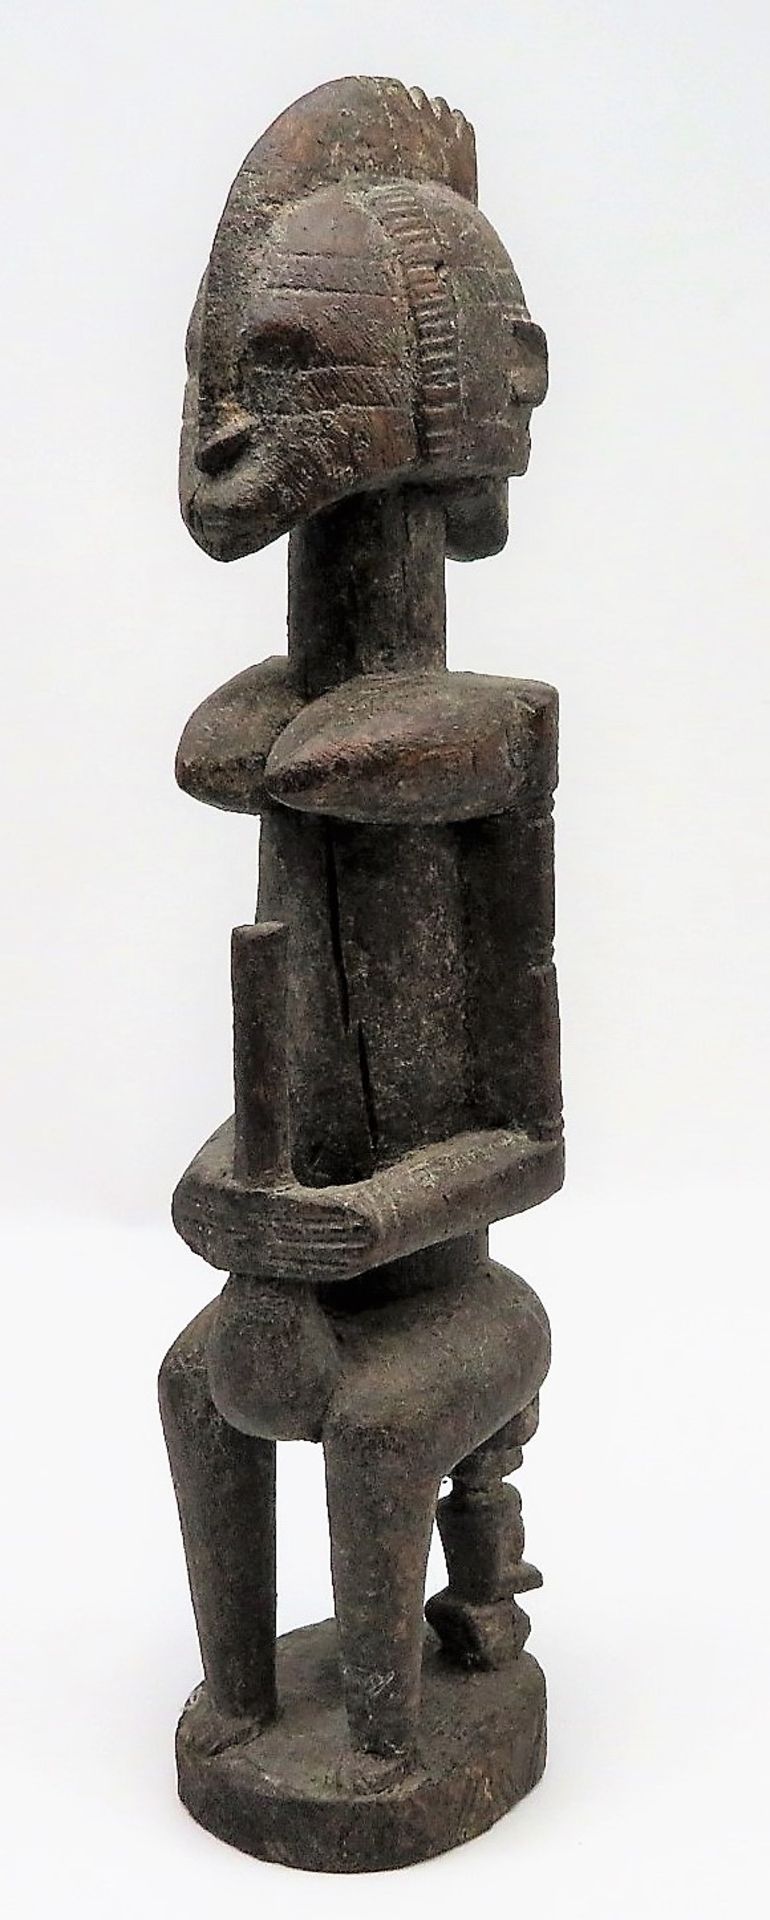 Fruchtbarkeitsfigur, Afrika, Mali, Dogon, Holz geschnitzt, Reste von Fassung, h 43 cm, d 9,5 cm.